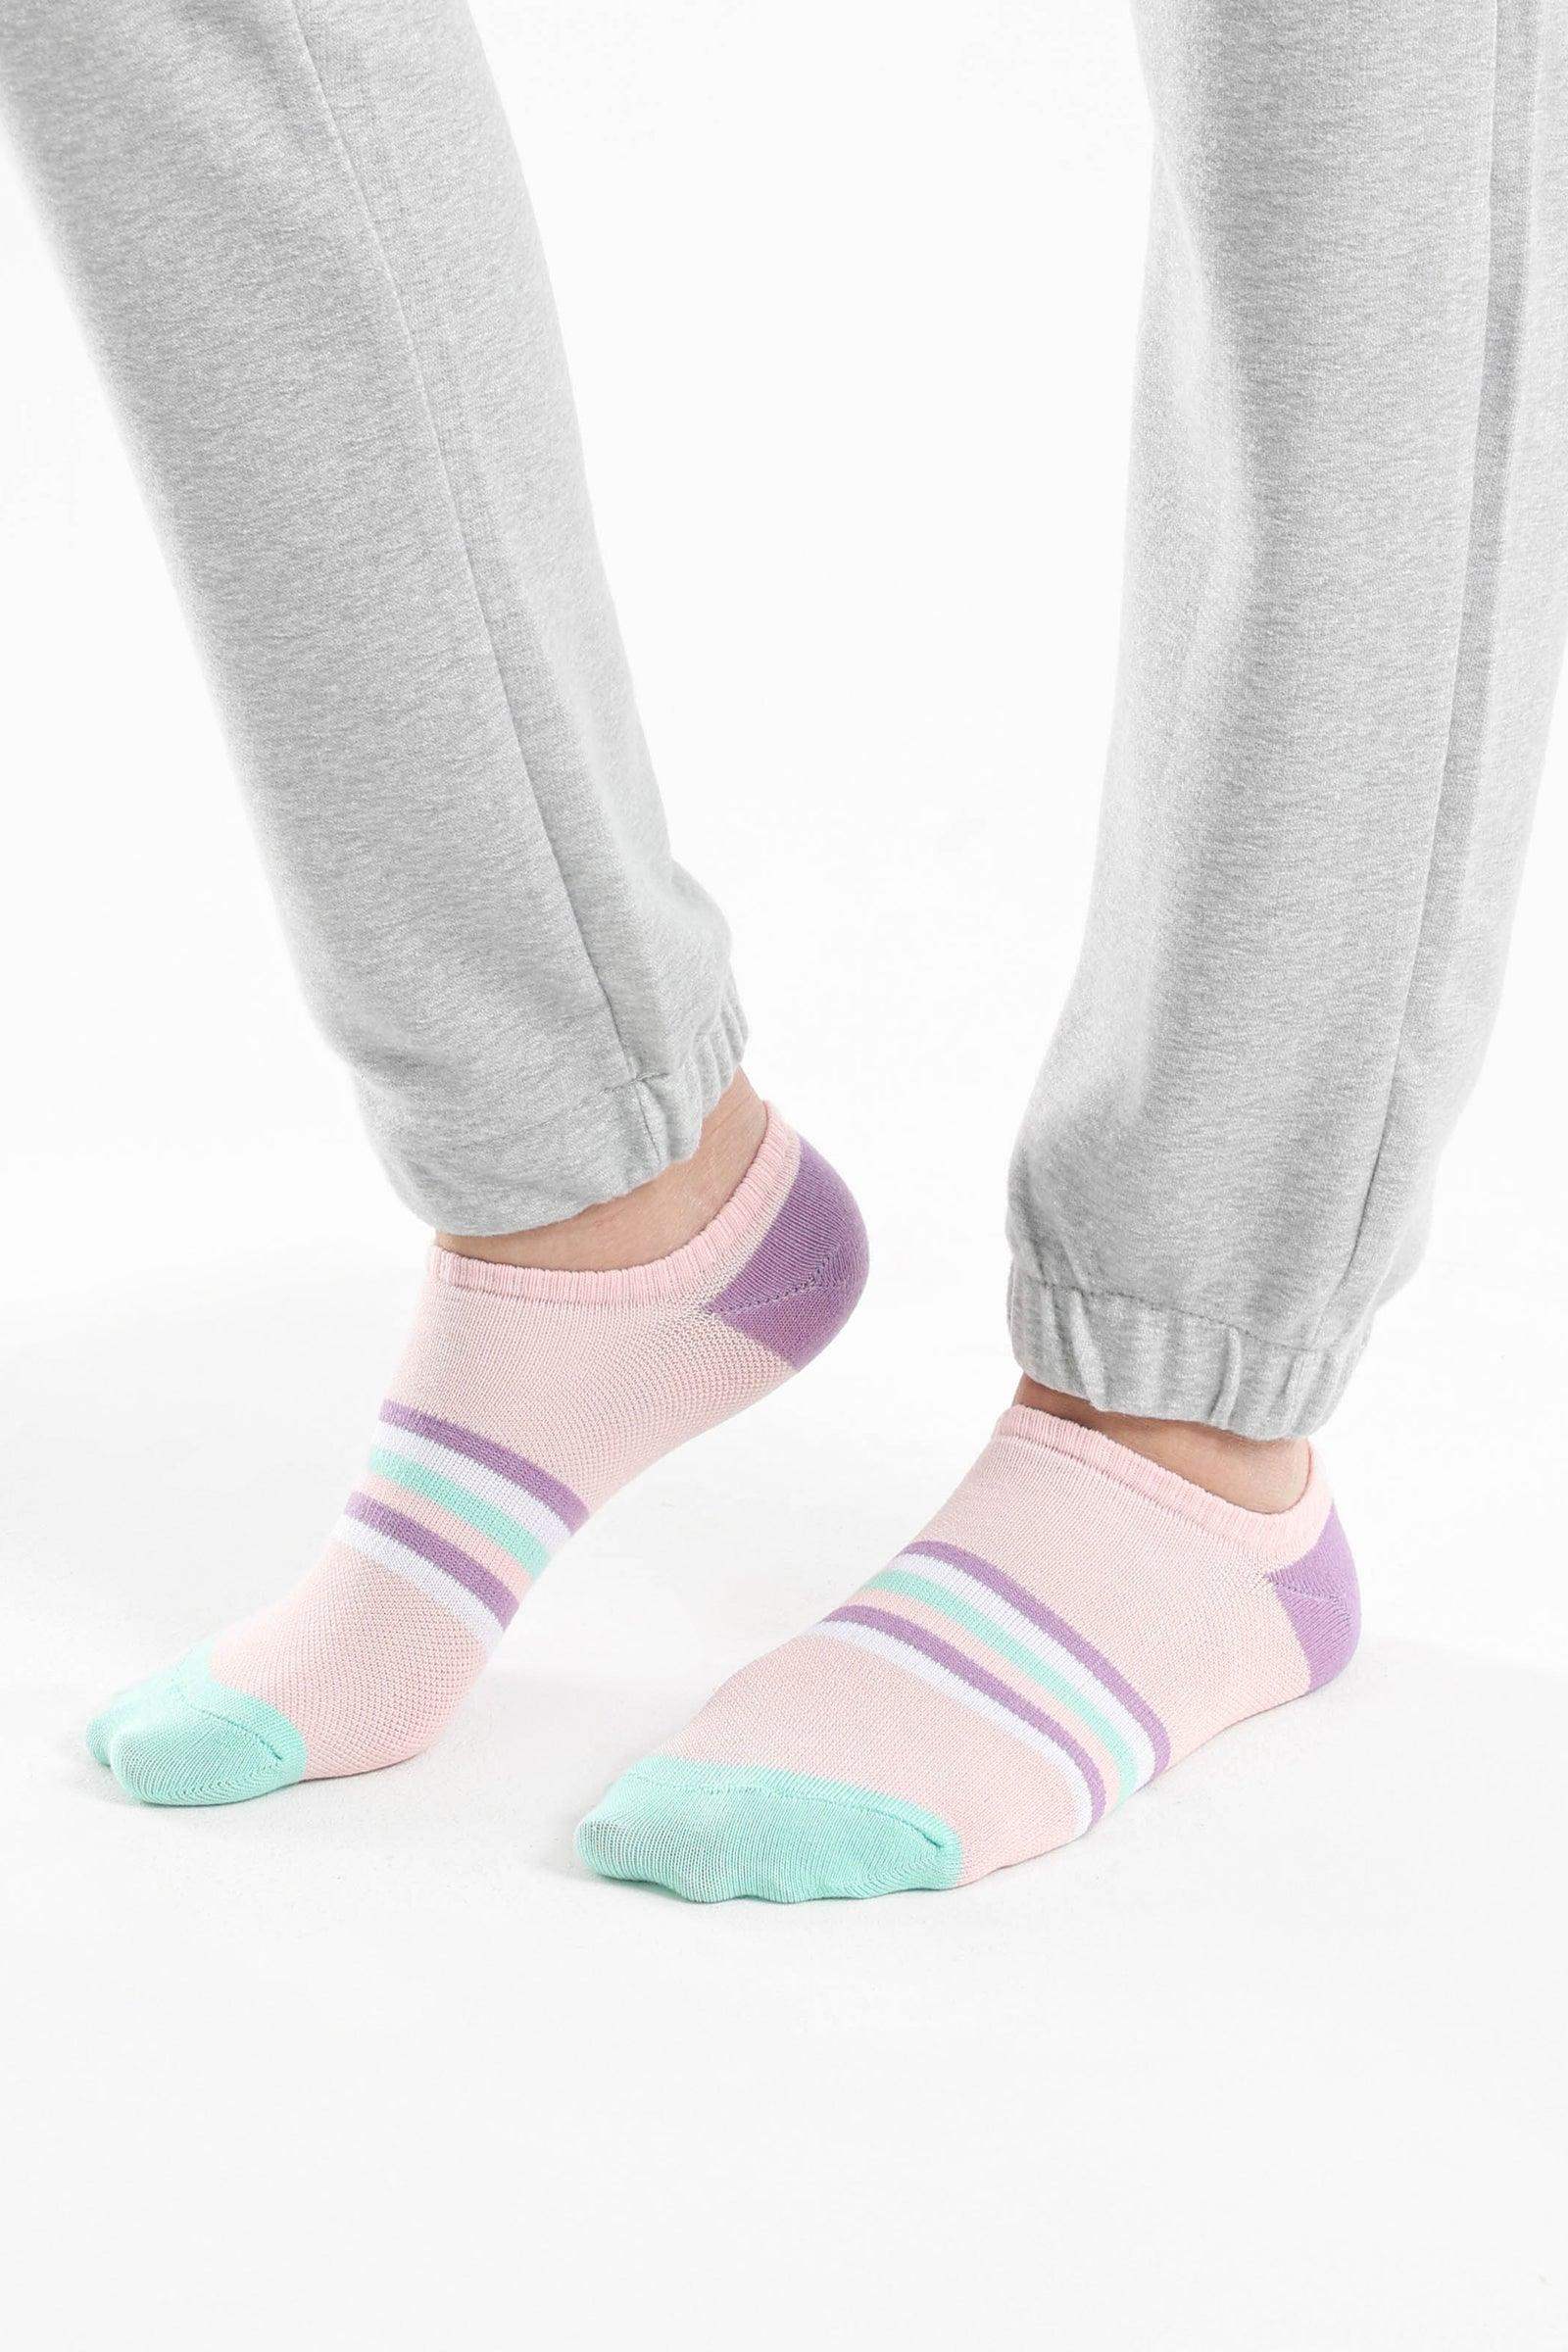 Striped Low Cut Socks - 3 Pairs - Carina - كارينا